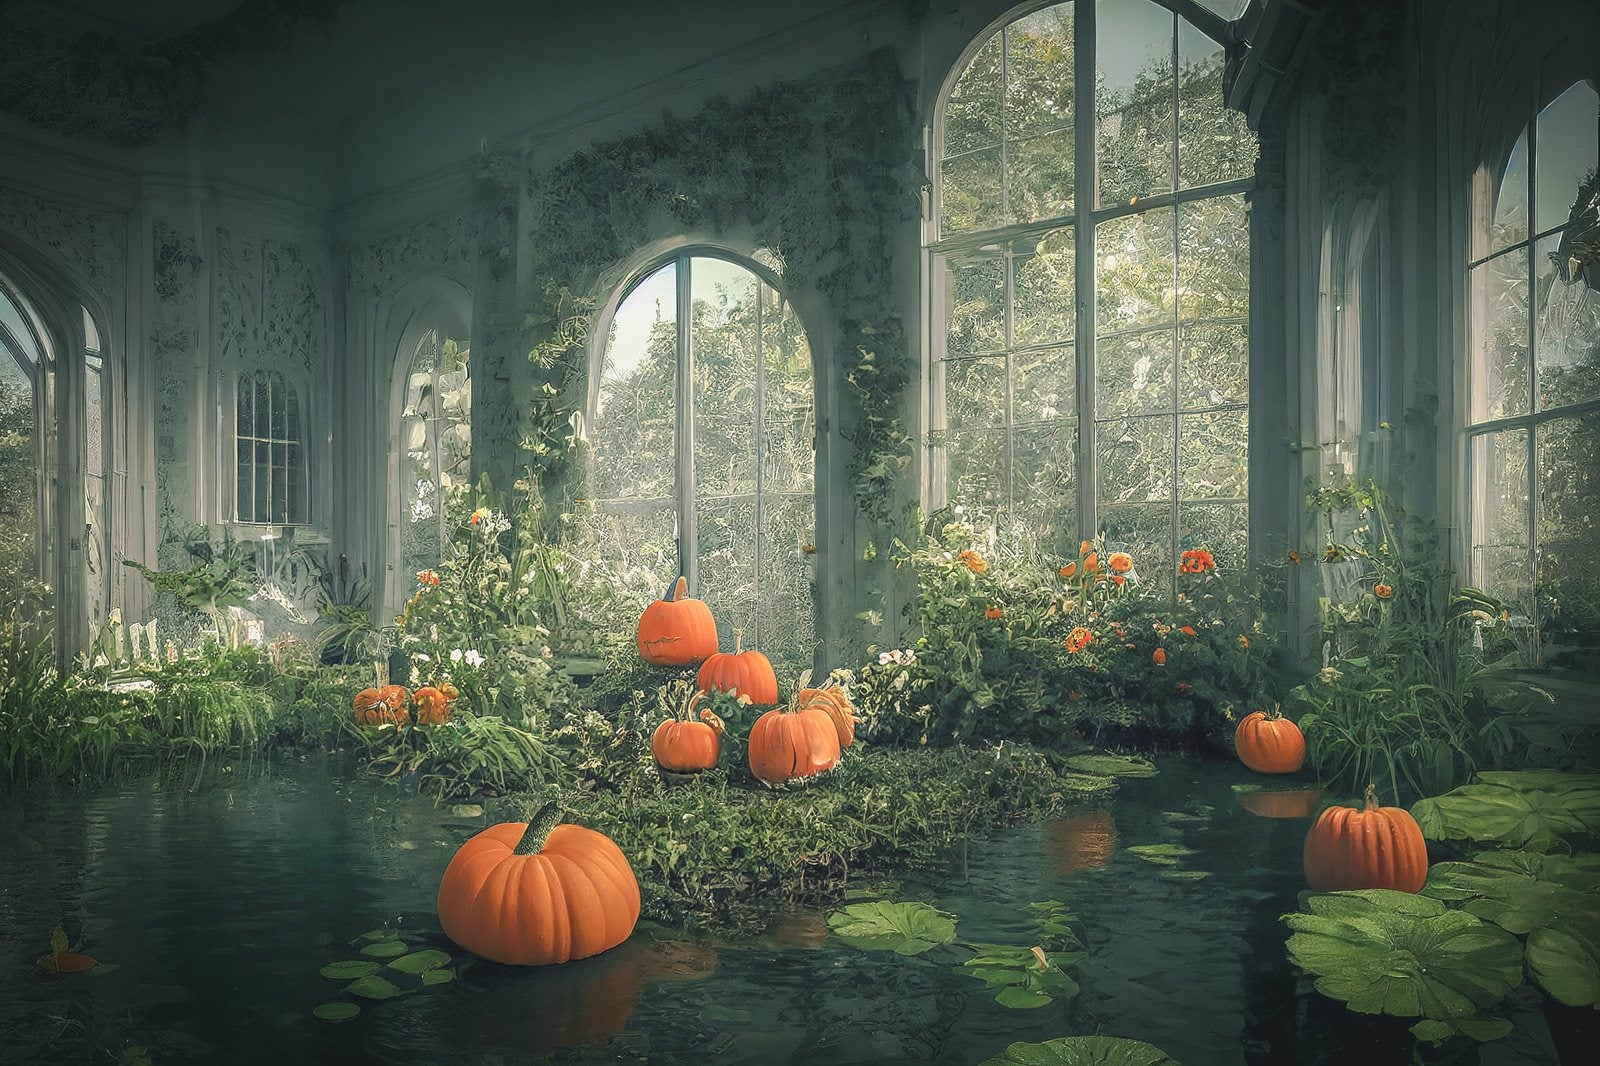 「ガラス温室に散らばるハロウィンかぼちゃ」の写真